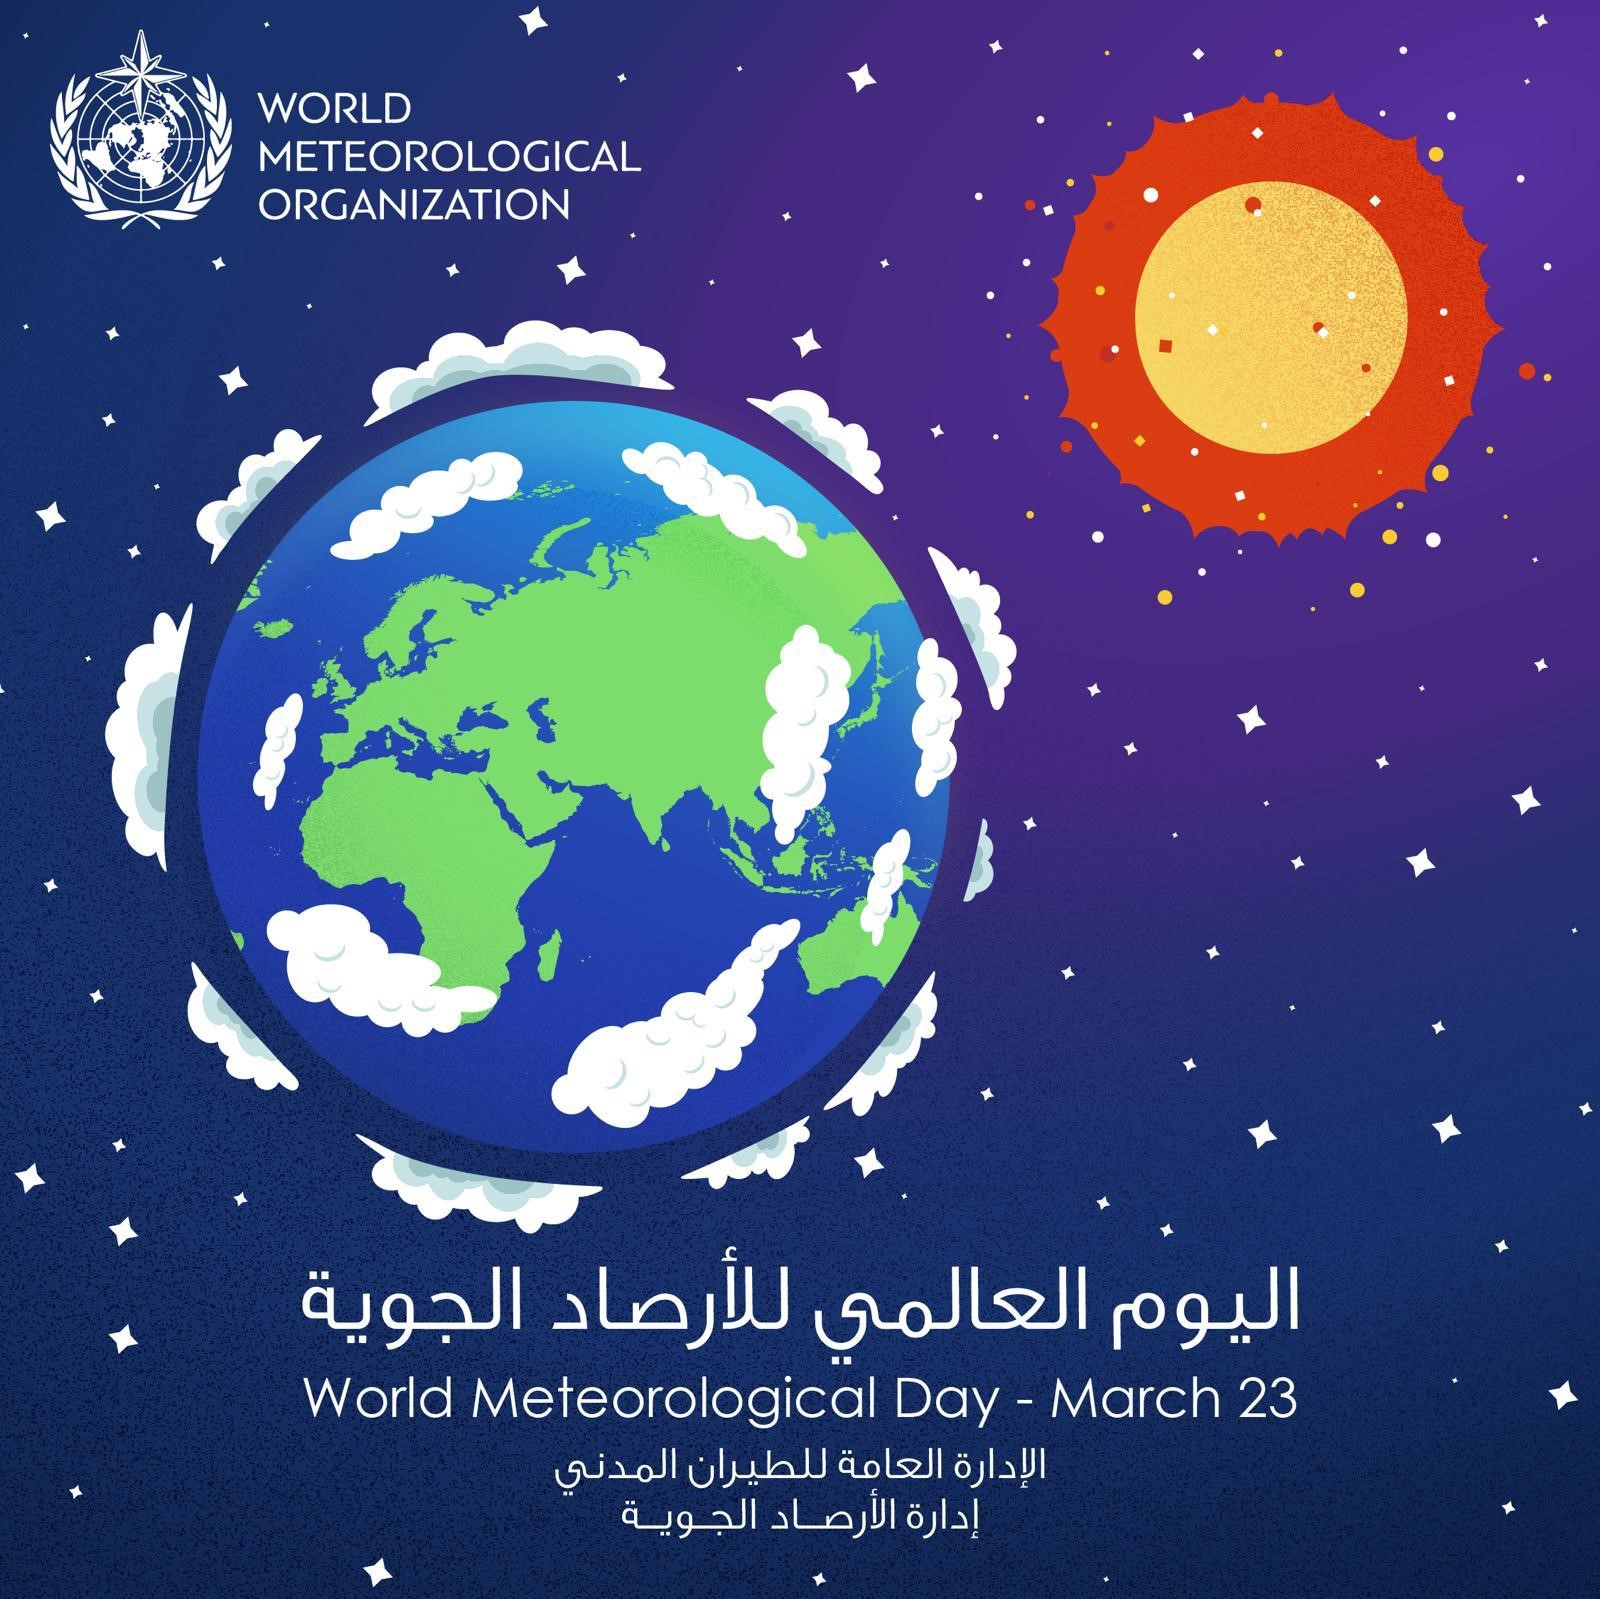 اليوم العالمي للأرصاد الجوية تحت شعار (الشمس والكرة الأرضية والطقس)